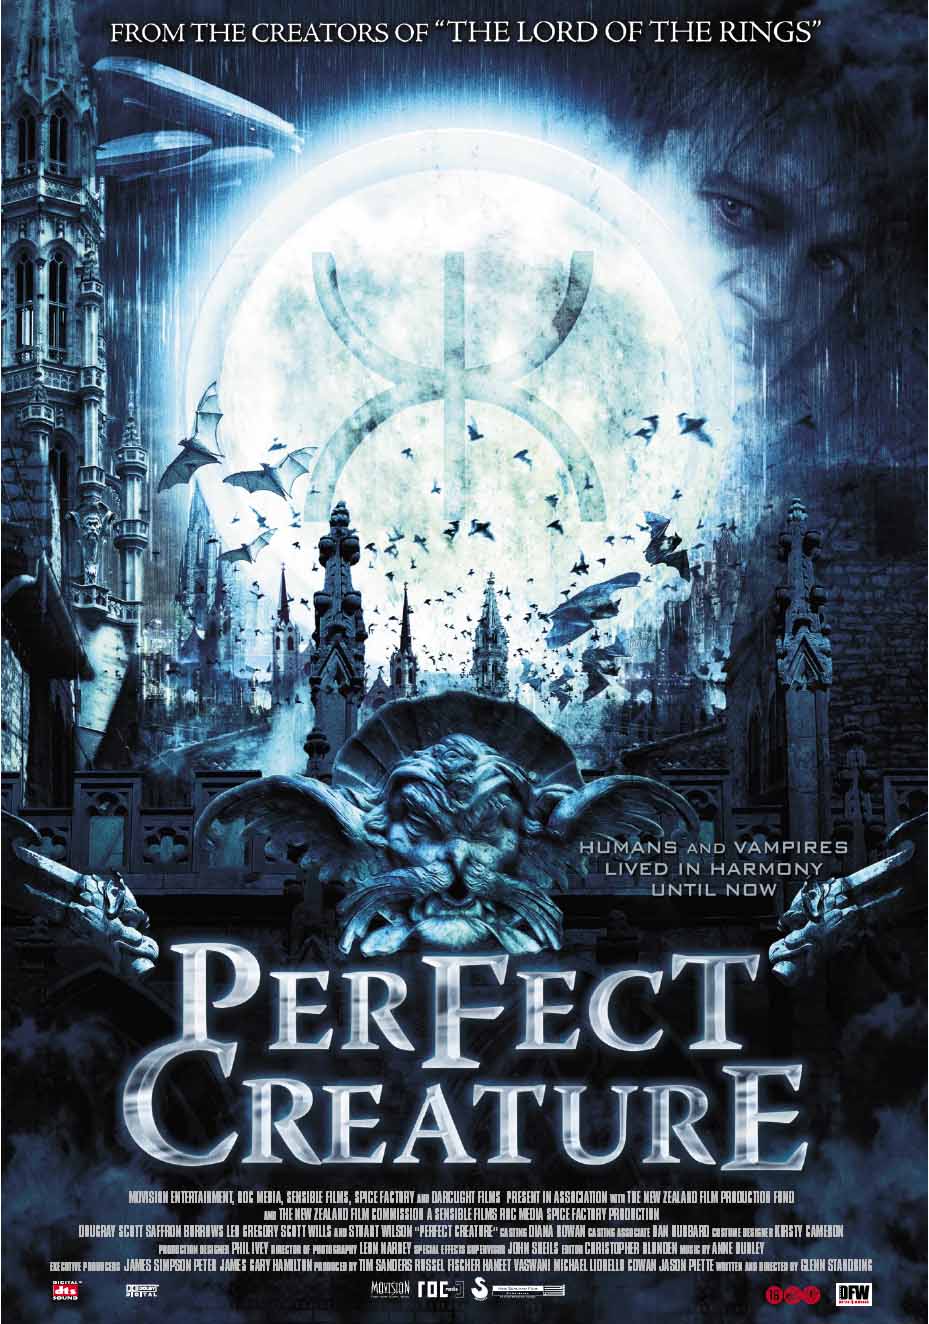 La criatura perfecta (2007) Perfect_creature